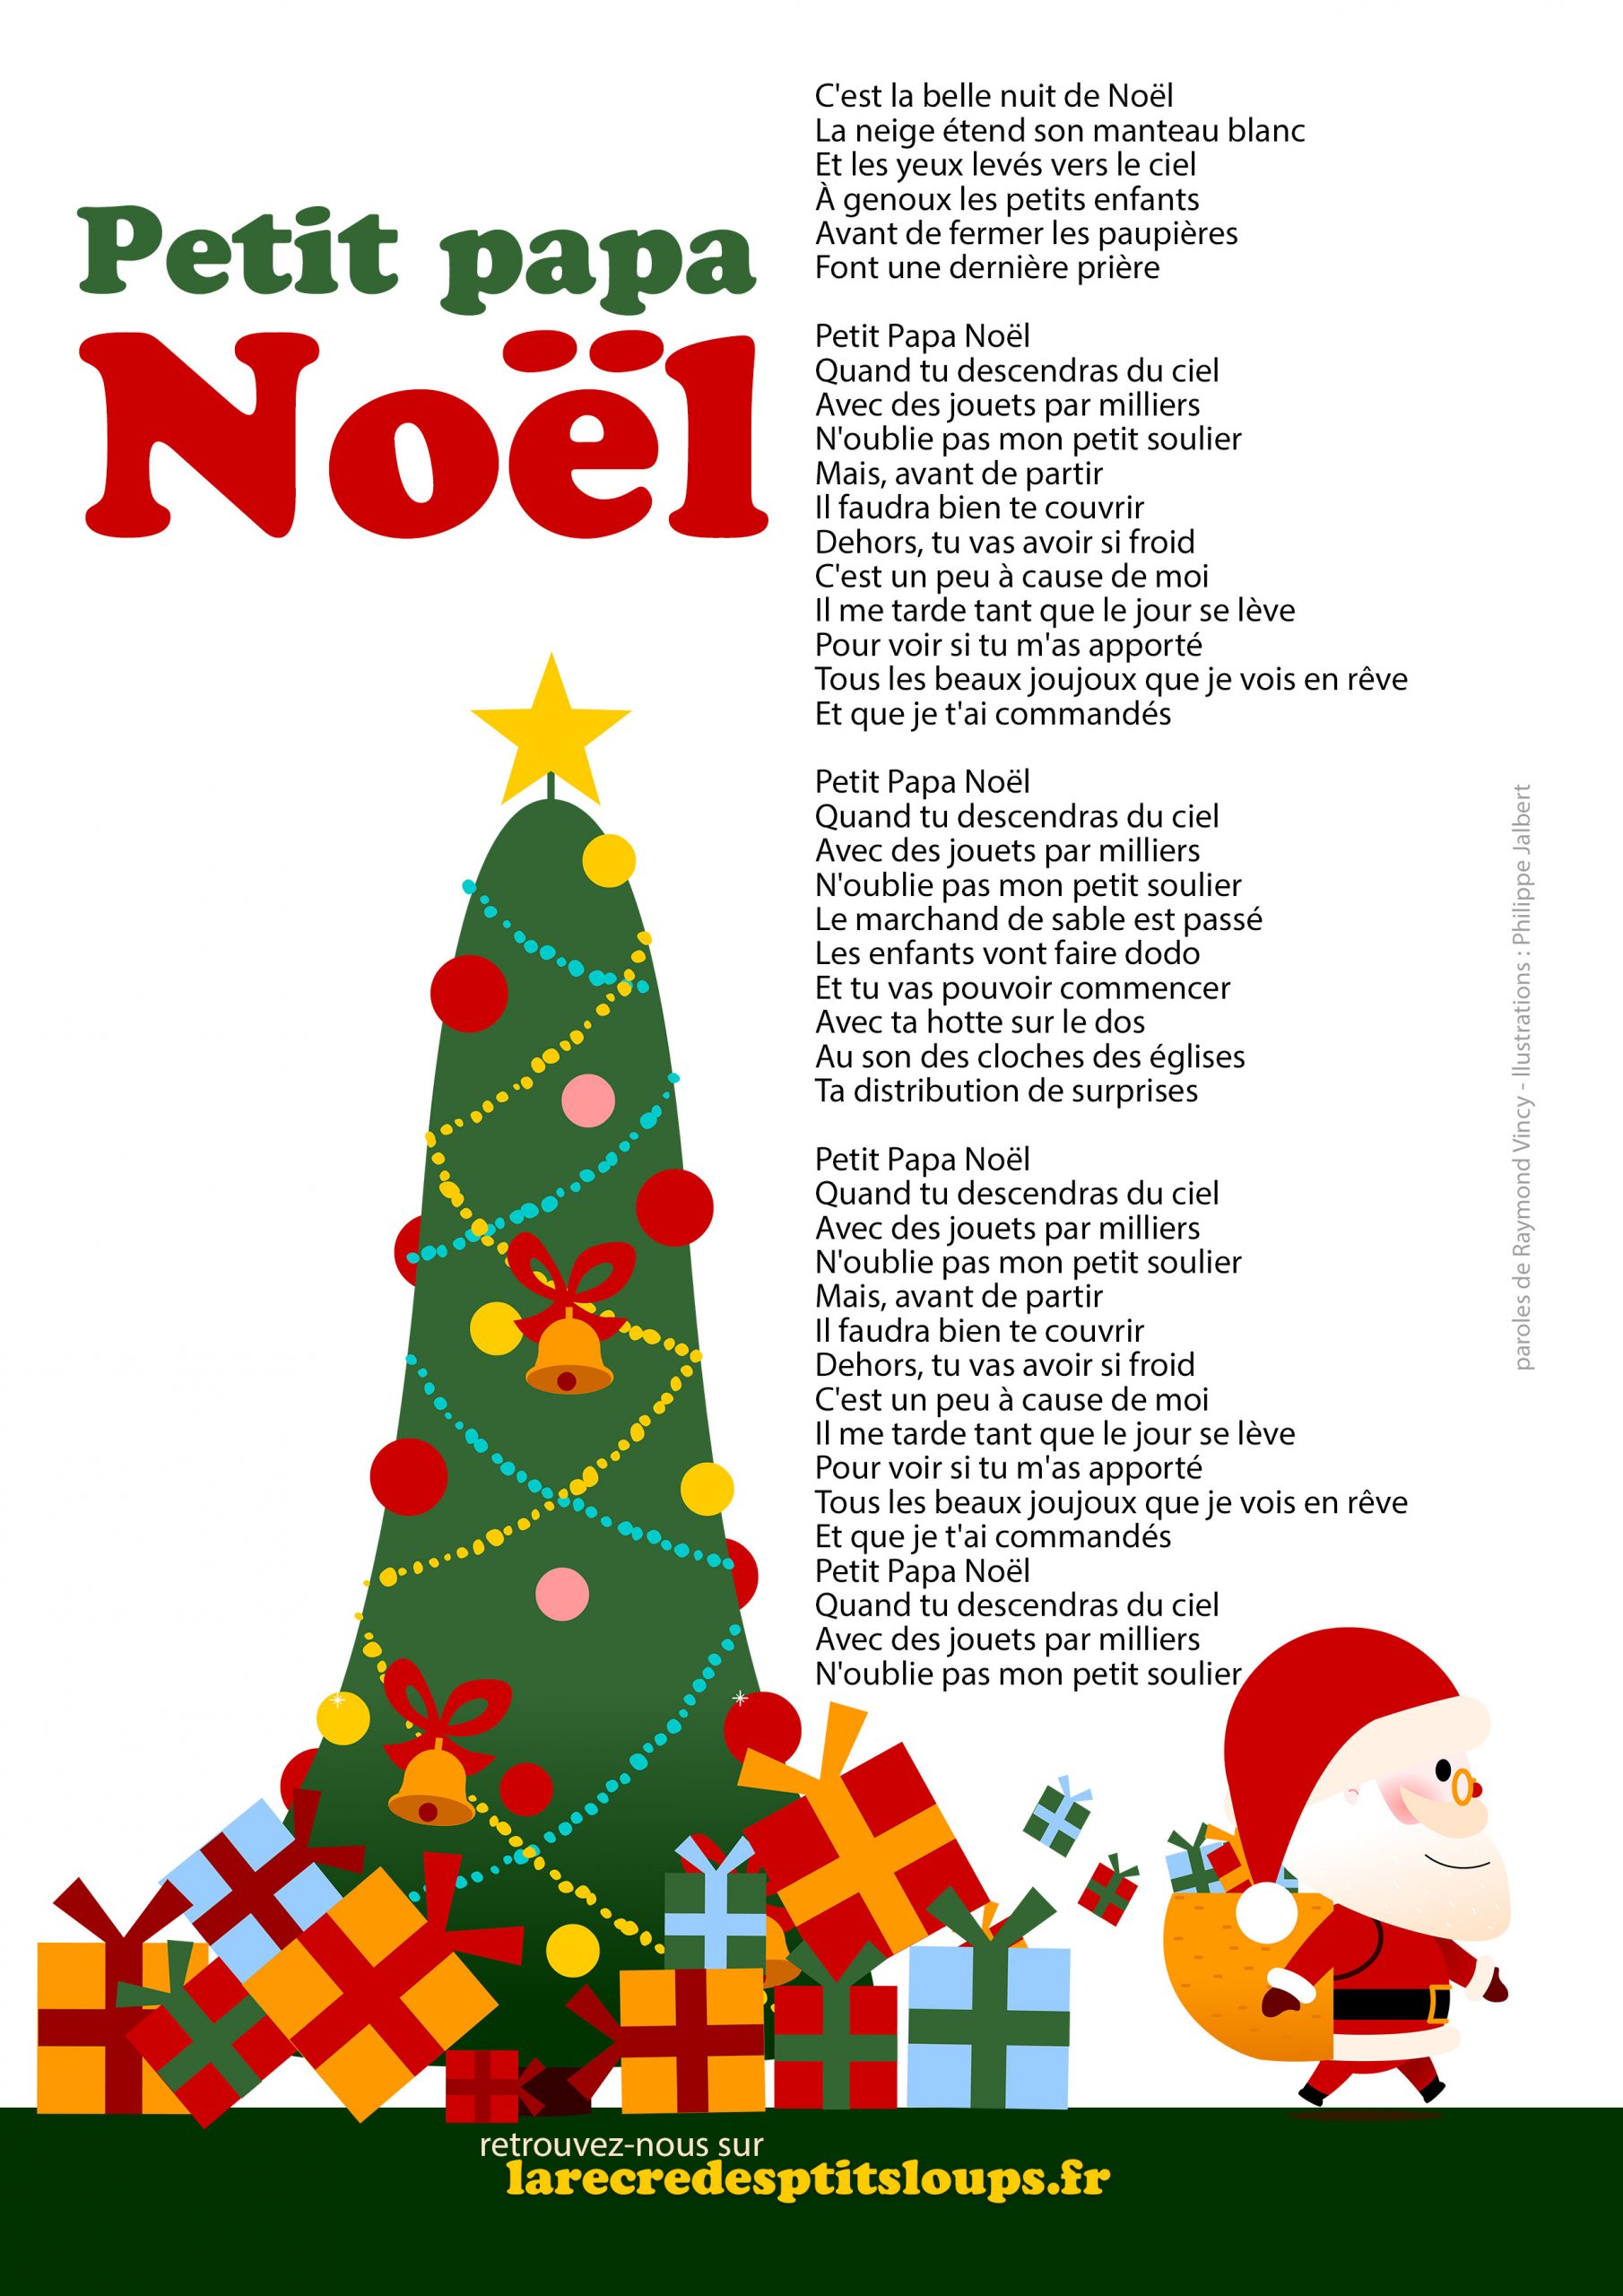 Paroles chansons de Noël